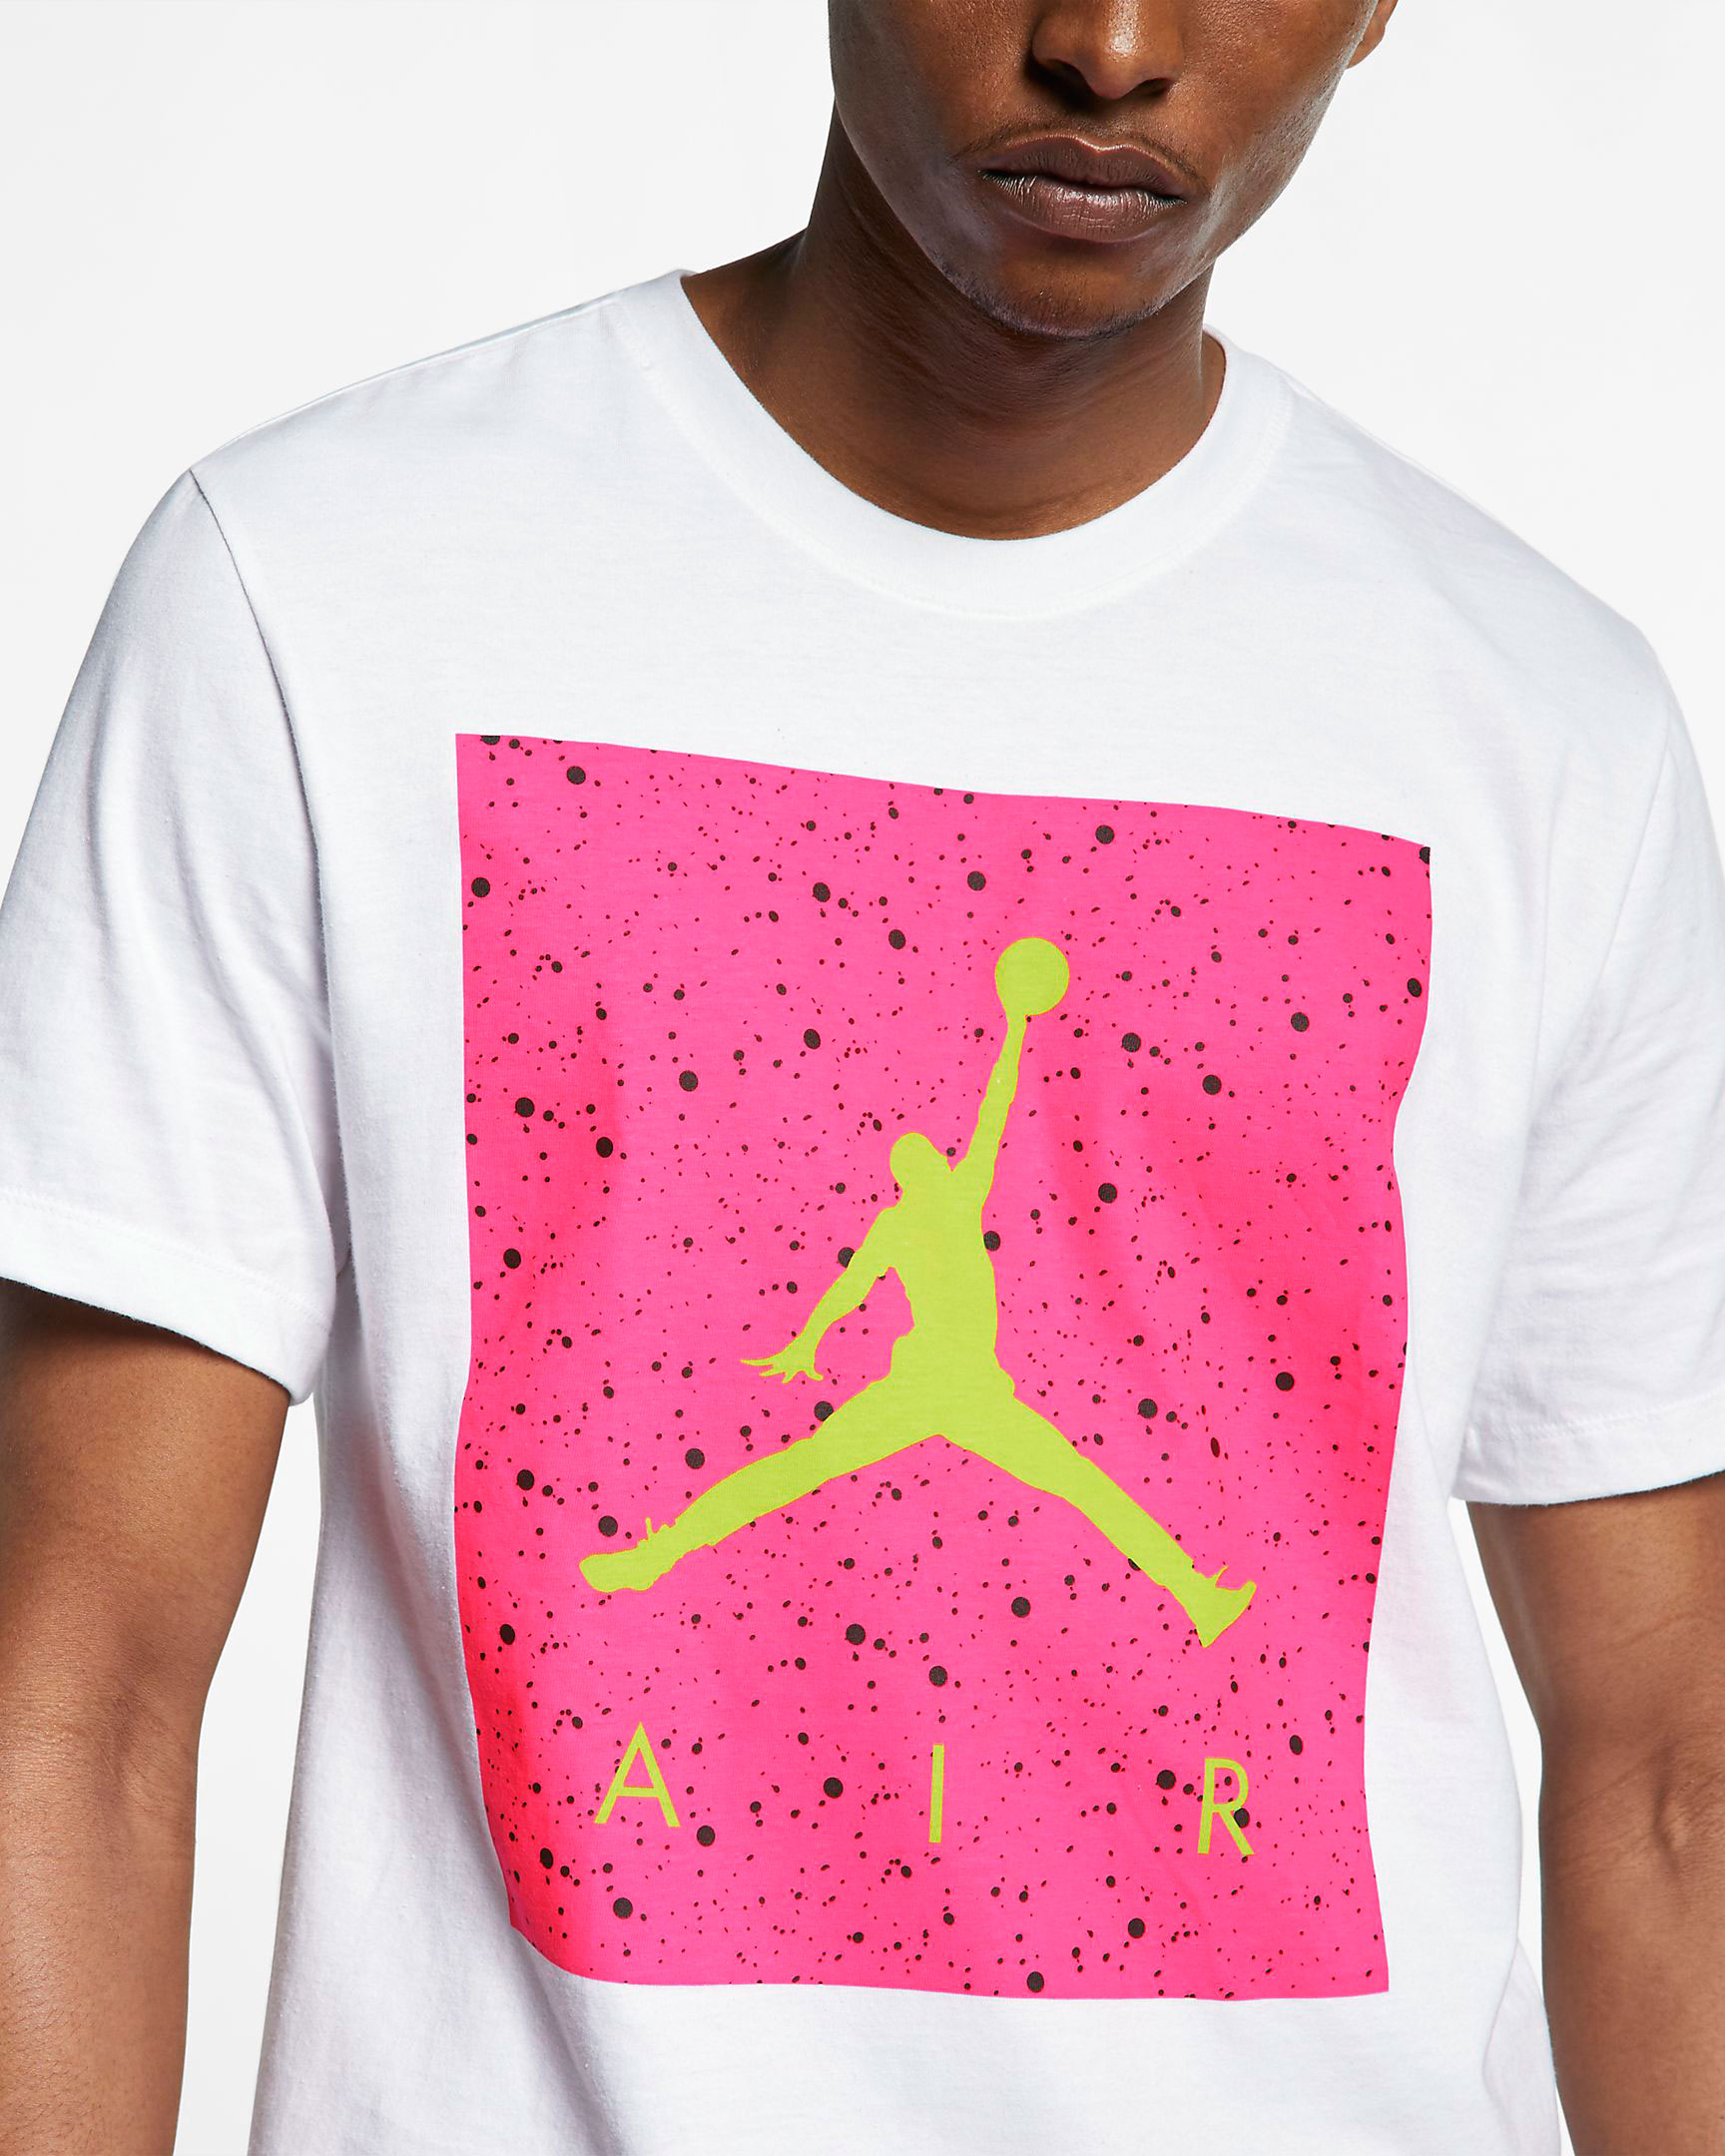 hot pink jordan shirt